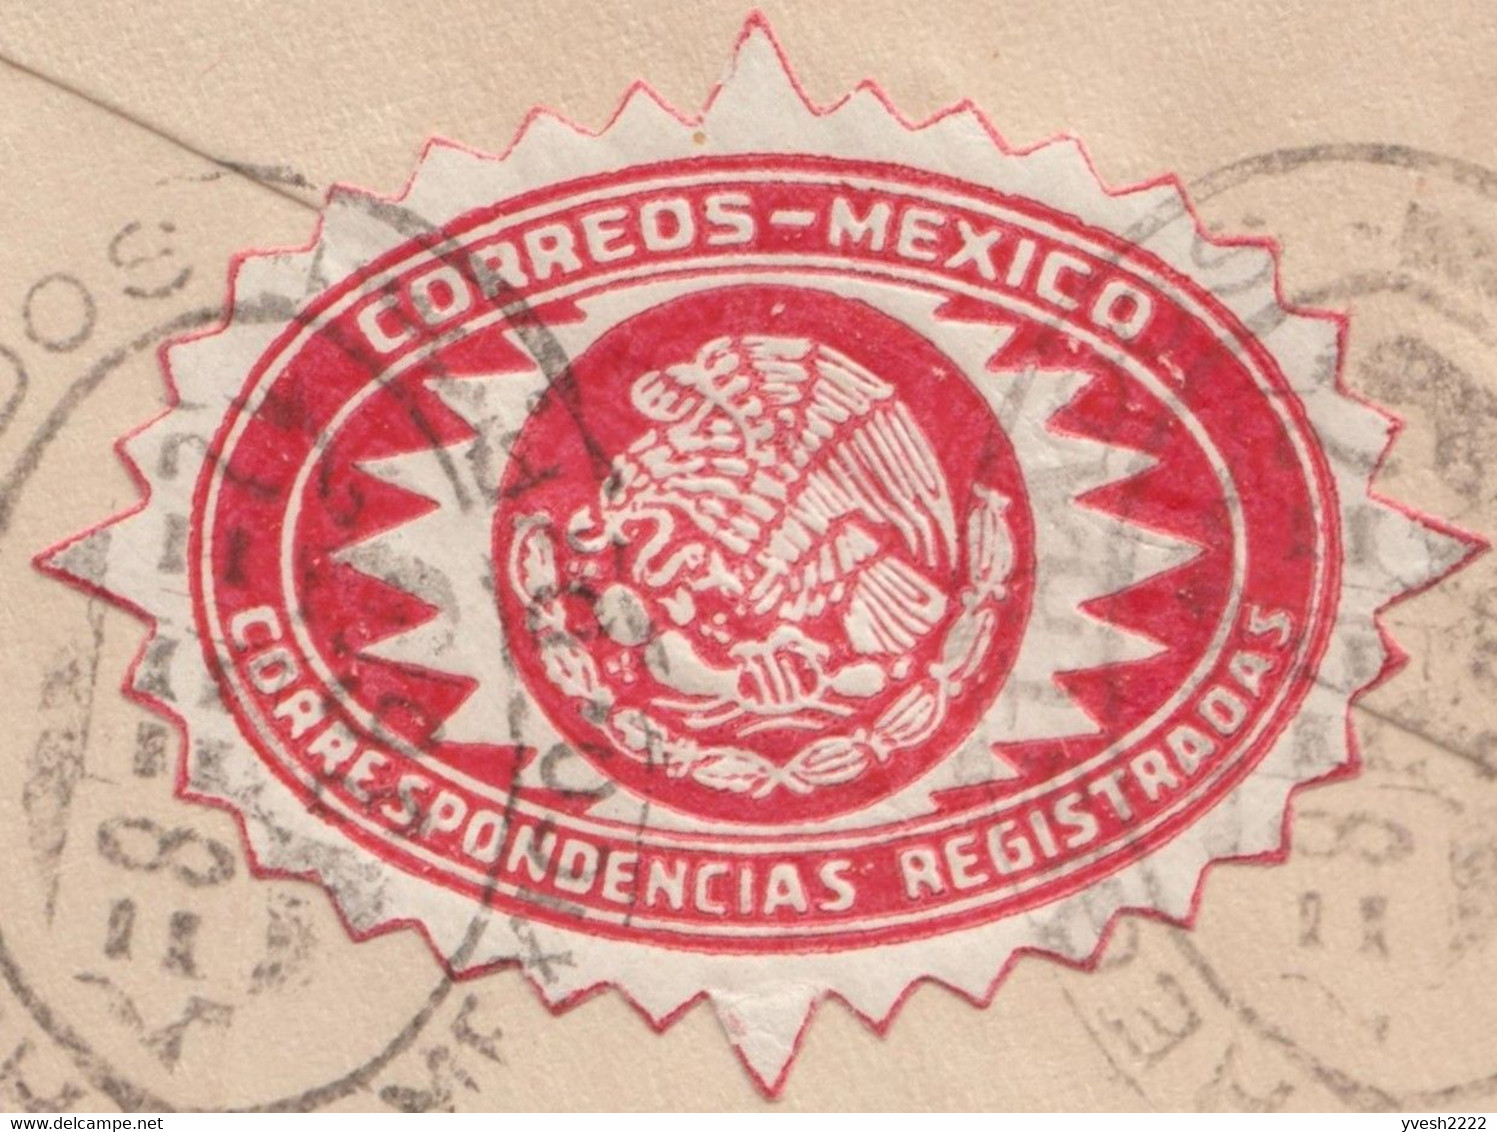 Mexique 1920 et 1936. Deux lettres recommandées avec vignettes postales bleue et rouges. Cactus, serpent, aigle